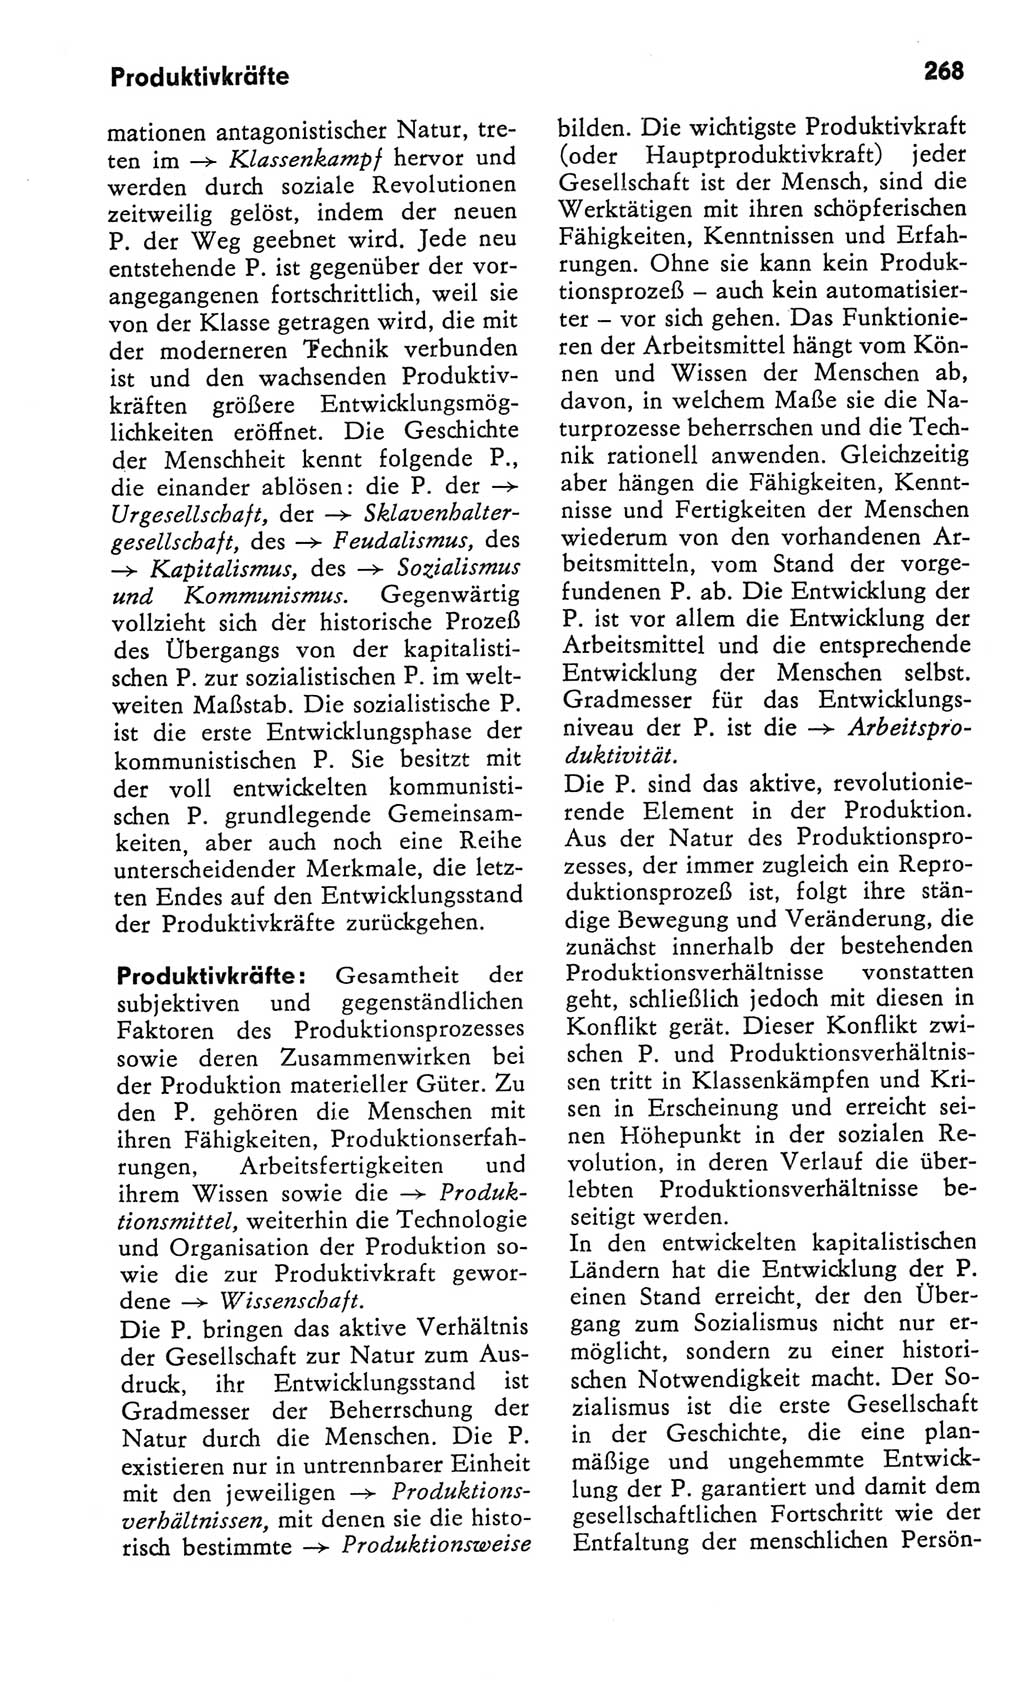 Kleines Wörterbuch der marxistisch-leninistischen Philosophie [Deutsche Demokratische Republik (DDR)] 1982, Seite 268 (Kl. Wb. ML Phil. DDR 1982, S. 268)